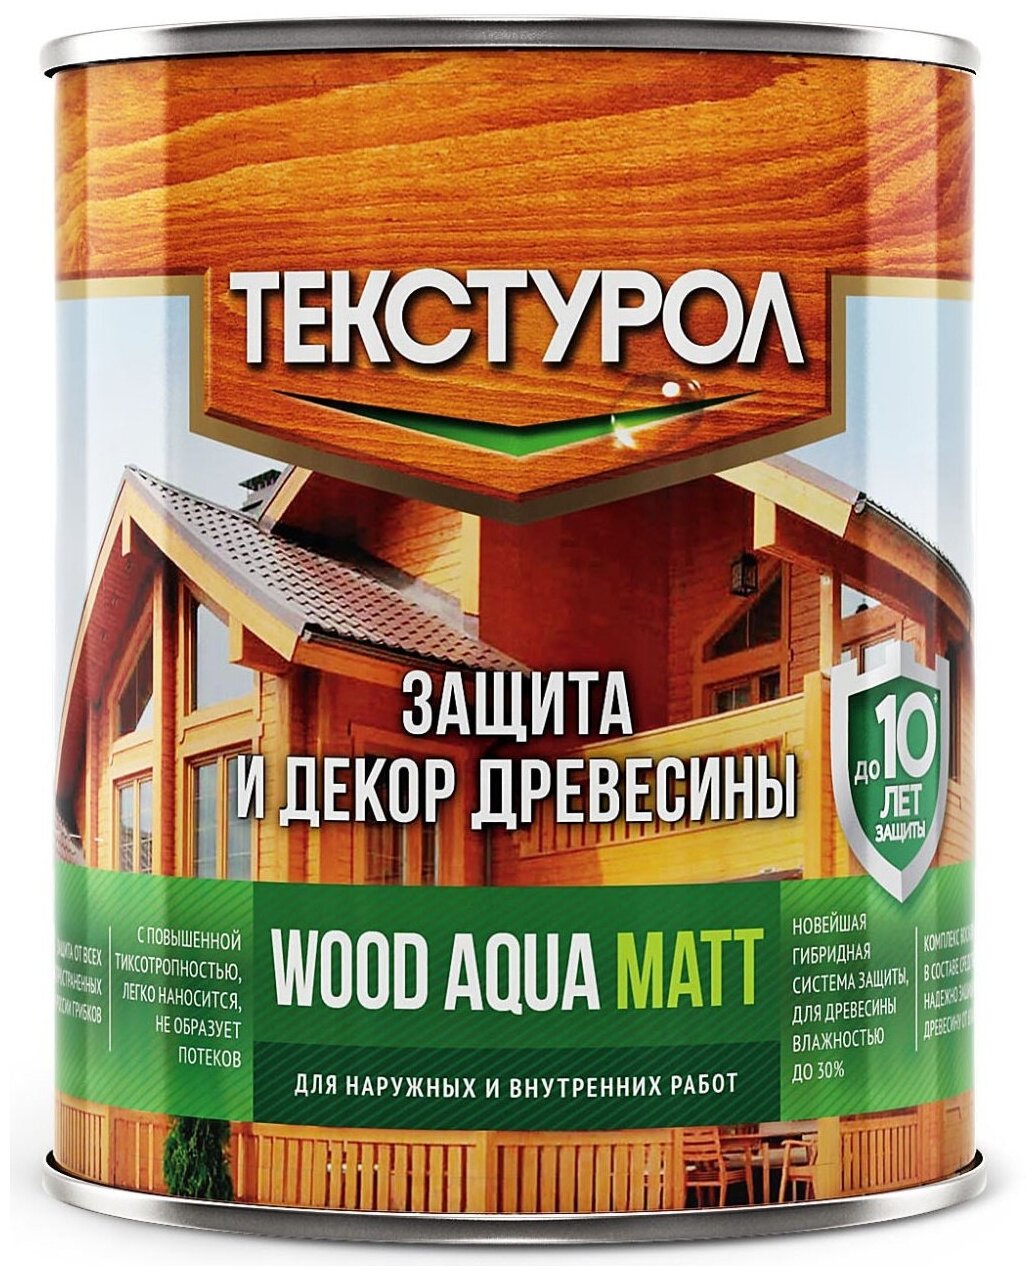 Текстурол WOOD AQUA MATT деревозащитное средство на вод. основе Сосна 0,8л